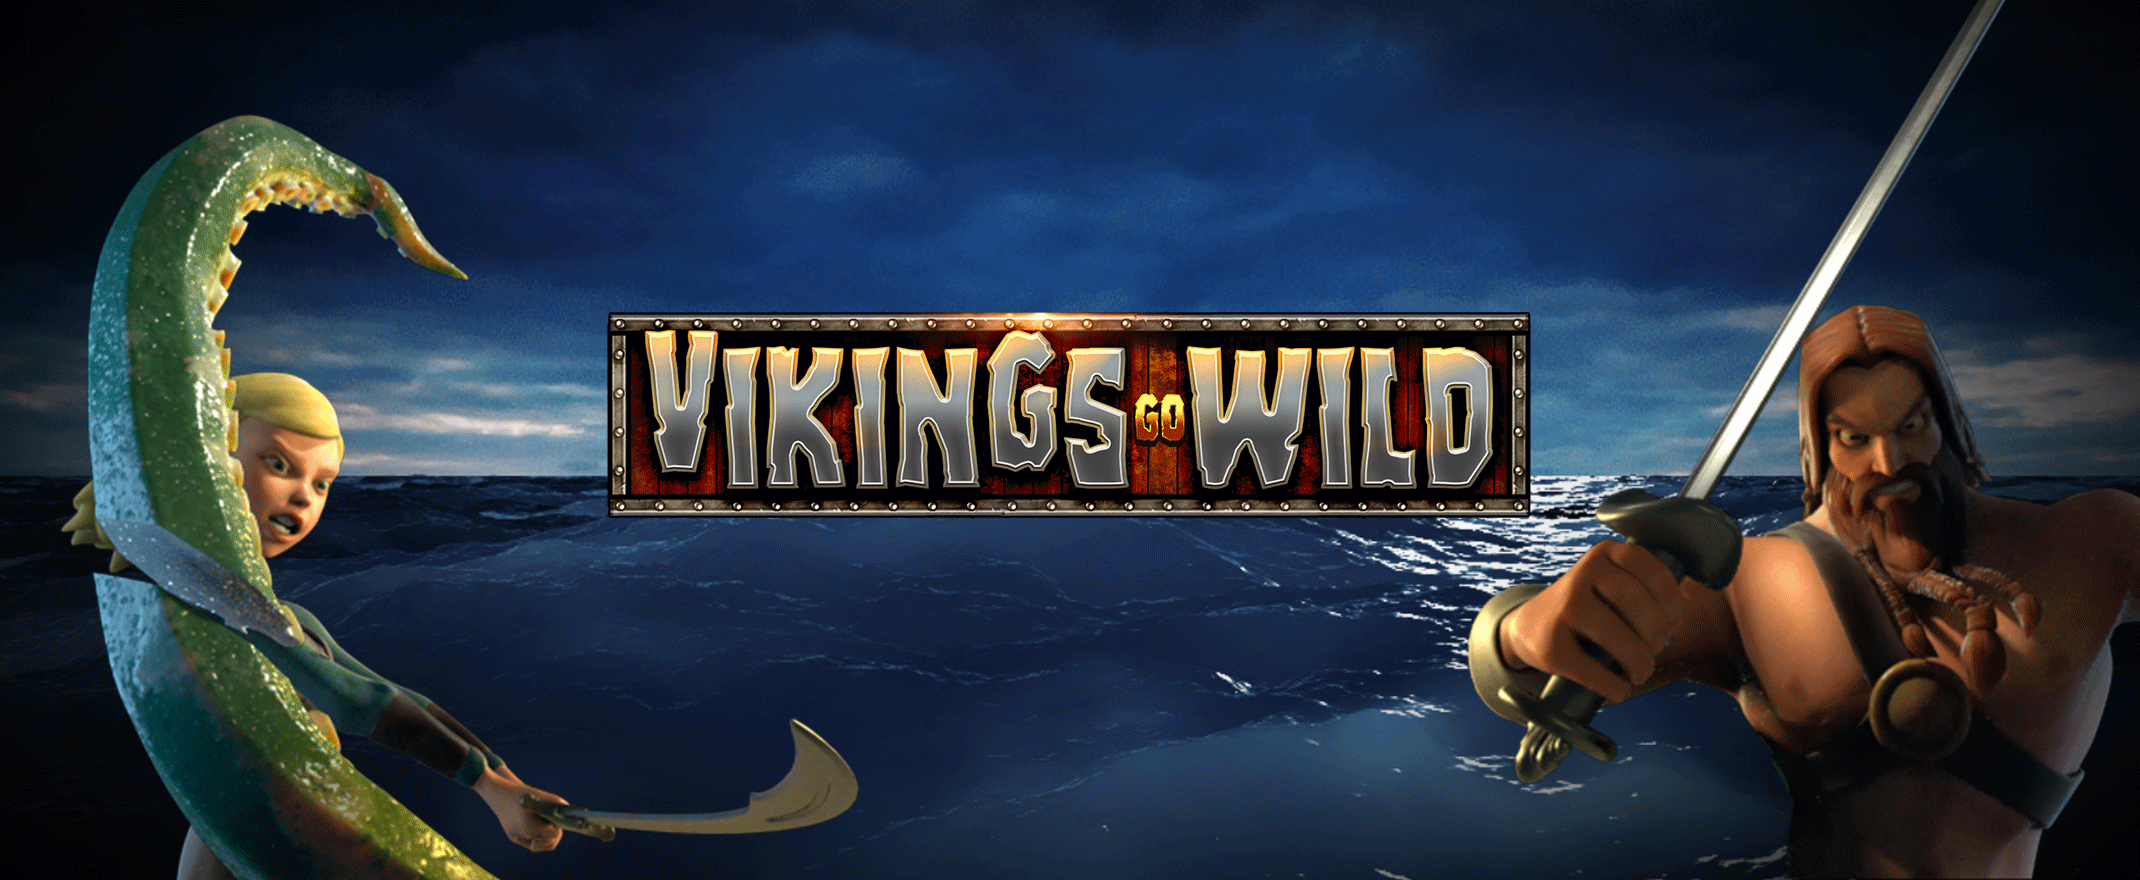 Vikings Go Wild casino game logo